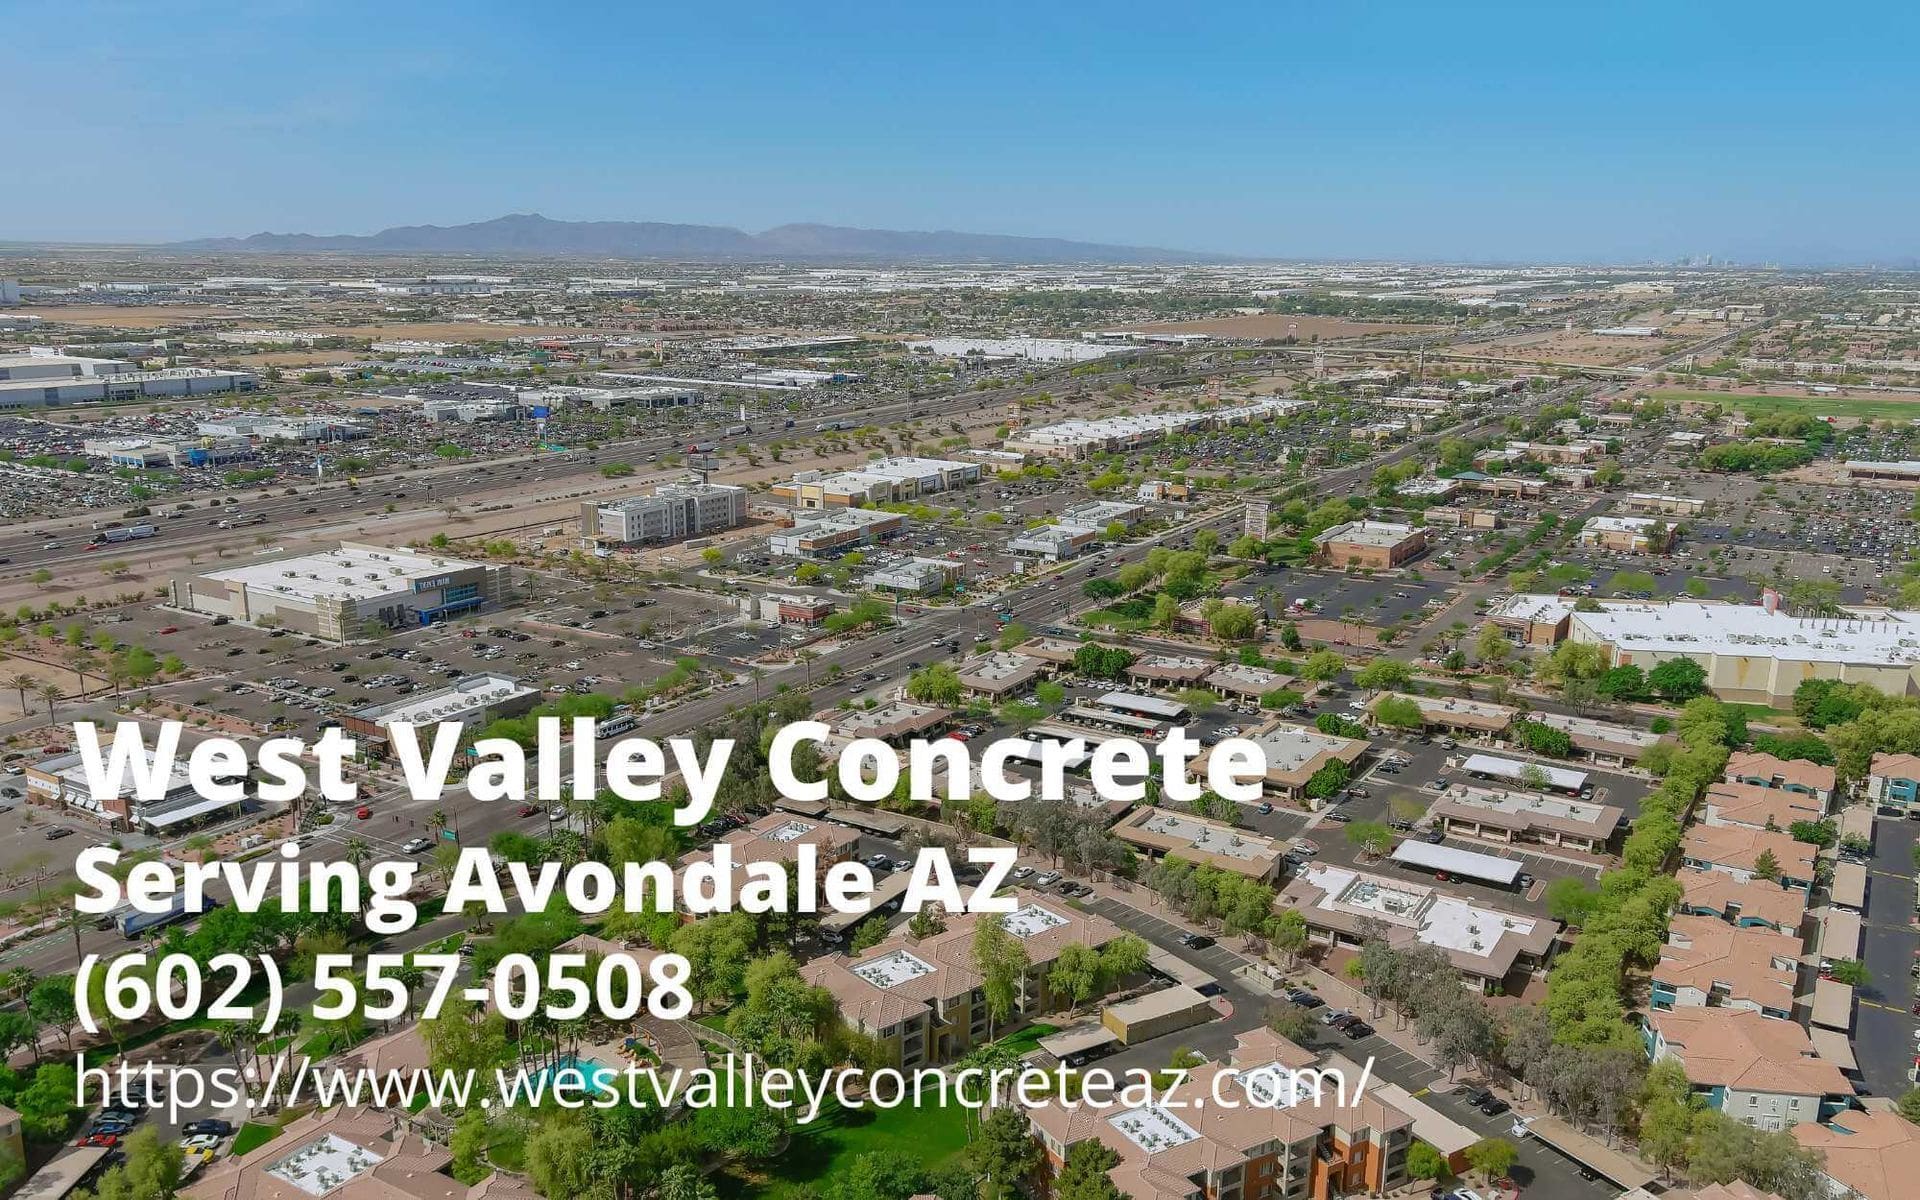 business details of West Valley Concrete - a concrete company serving Avondale, AZ